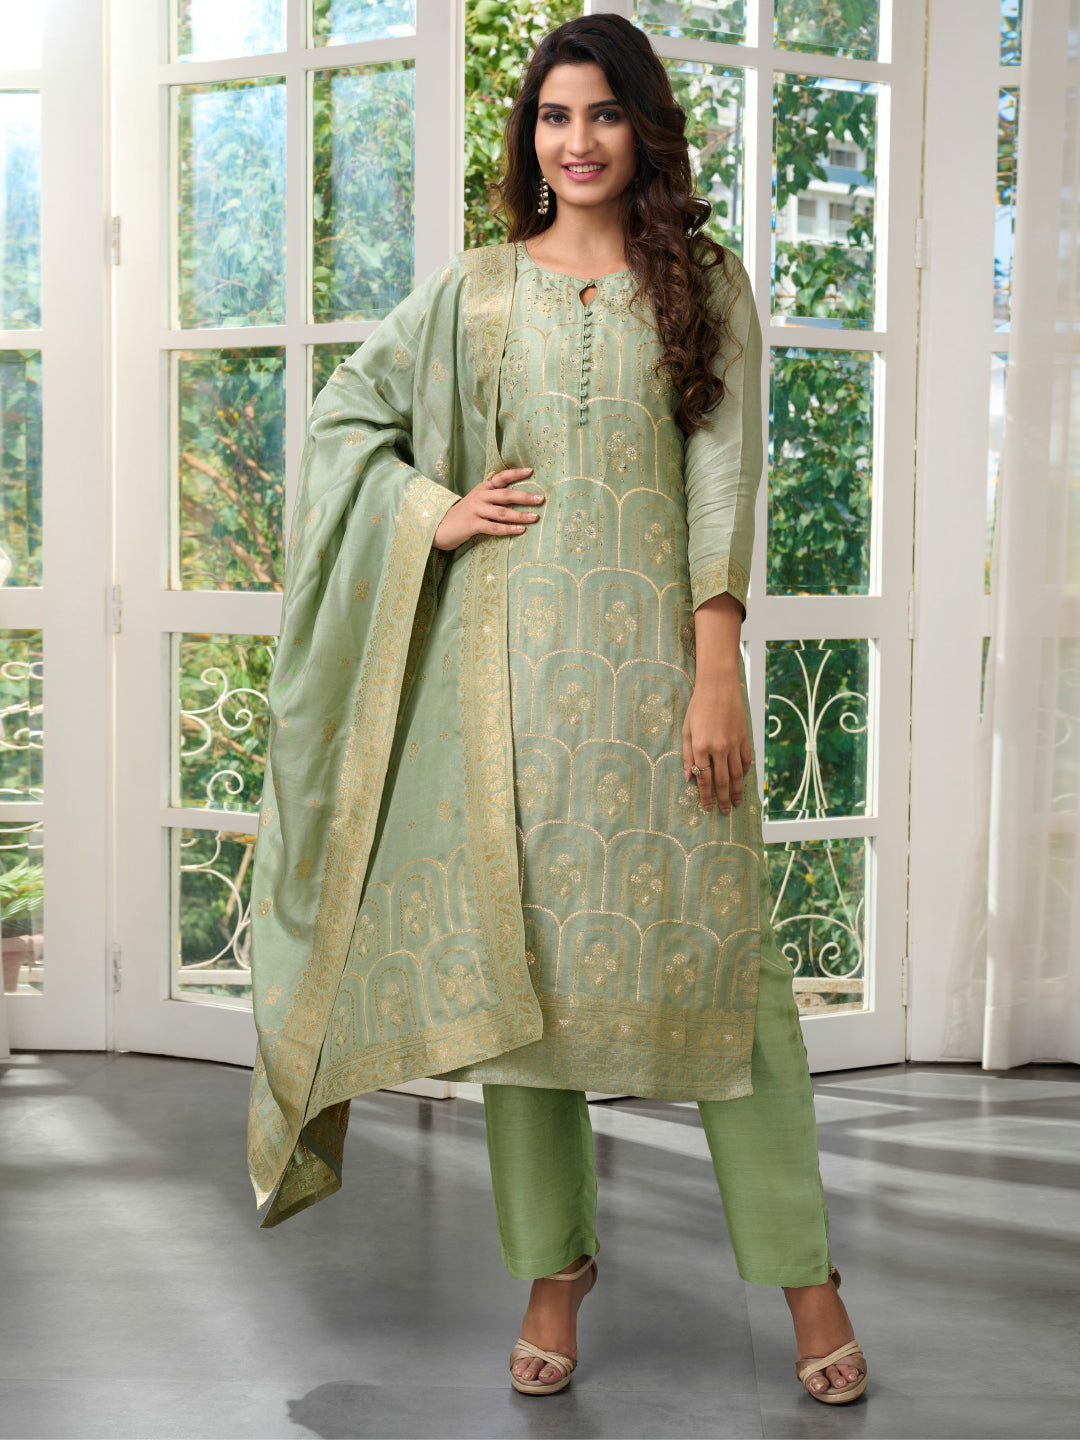 Pretty Powder Blue Pink Salwar Suit - Rana's by Kshitija